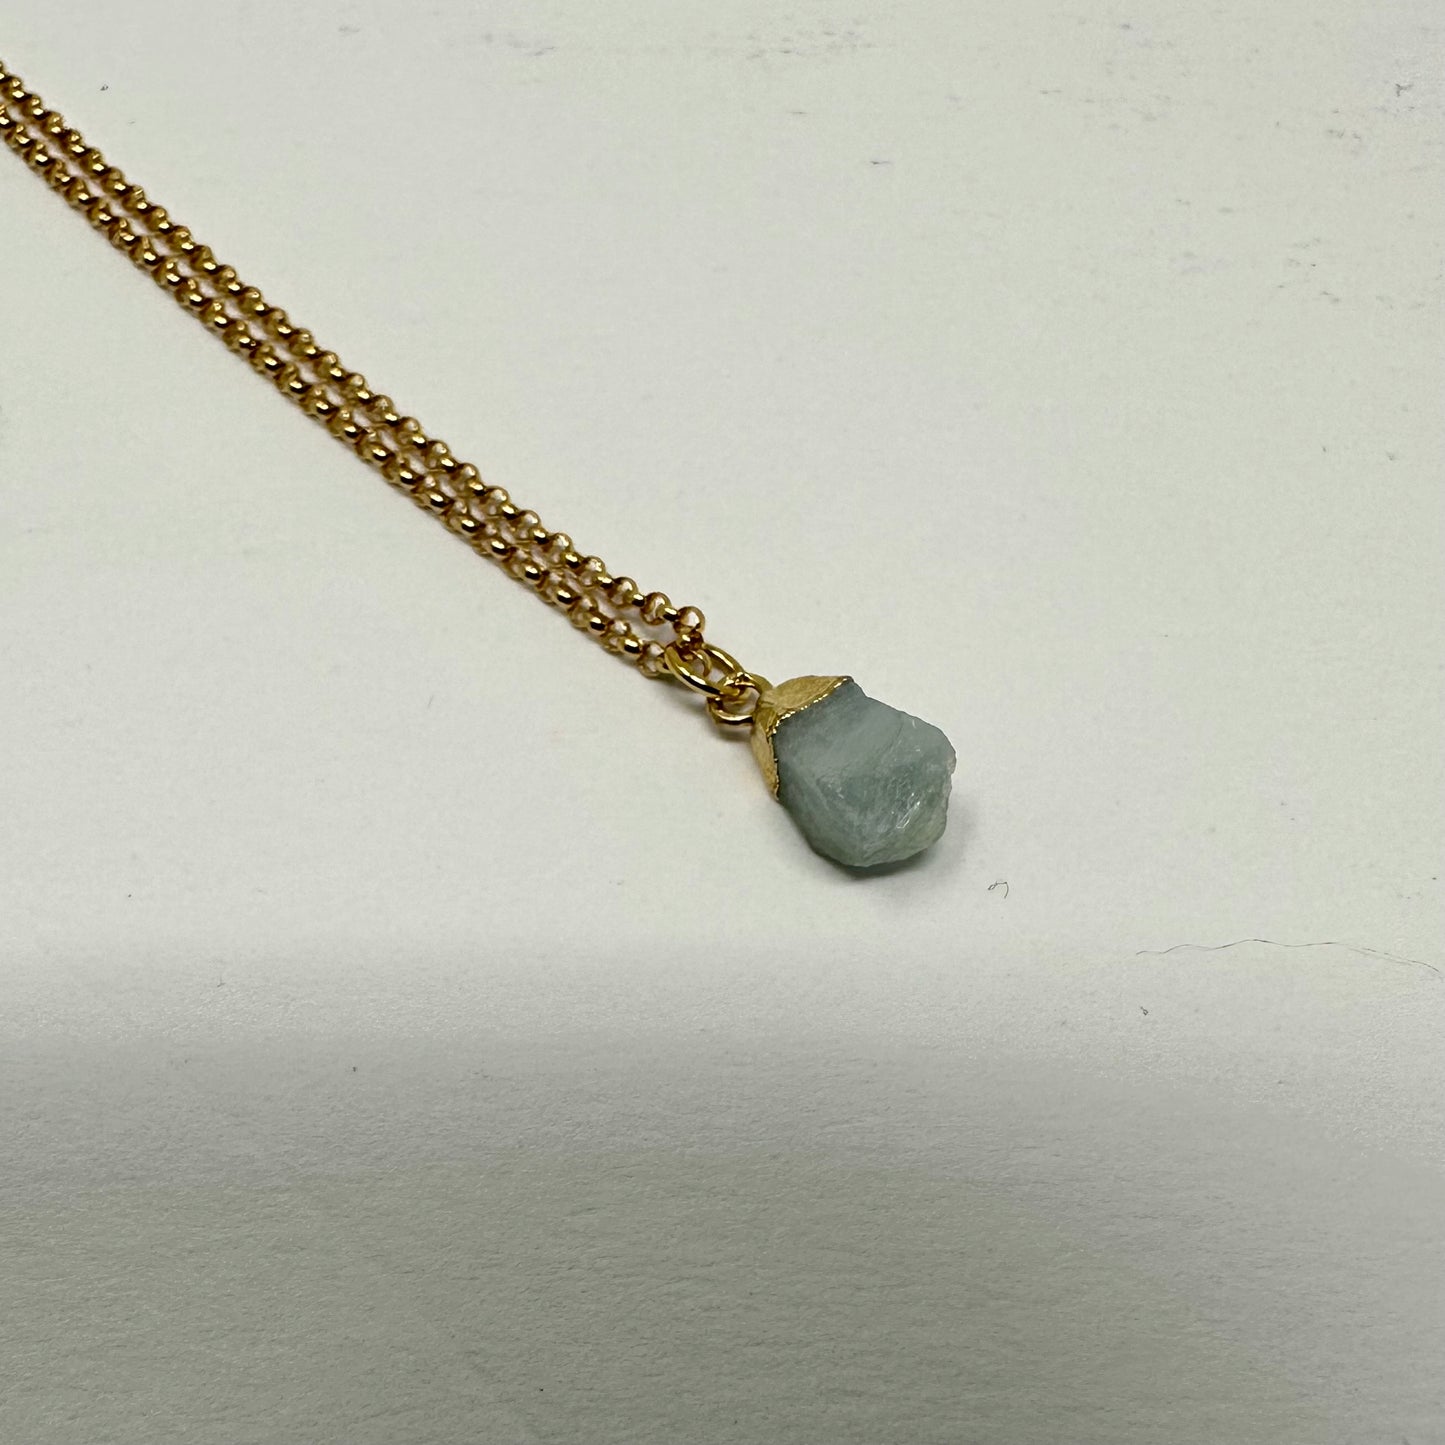 Small aquamarine pendant